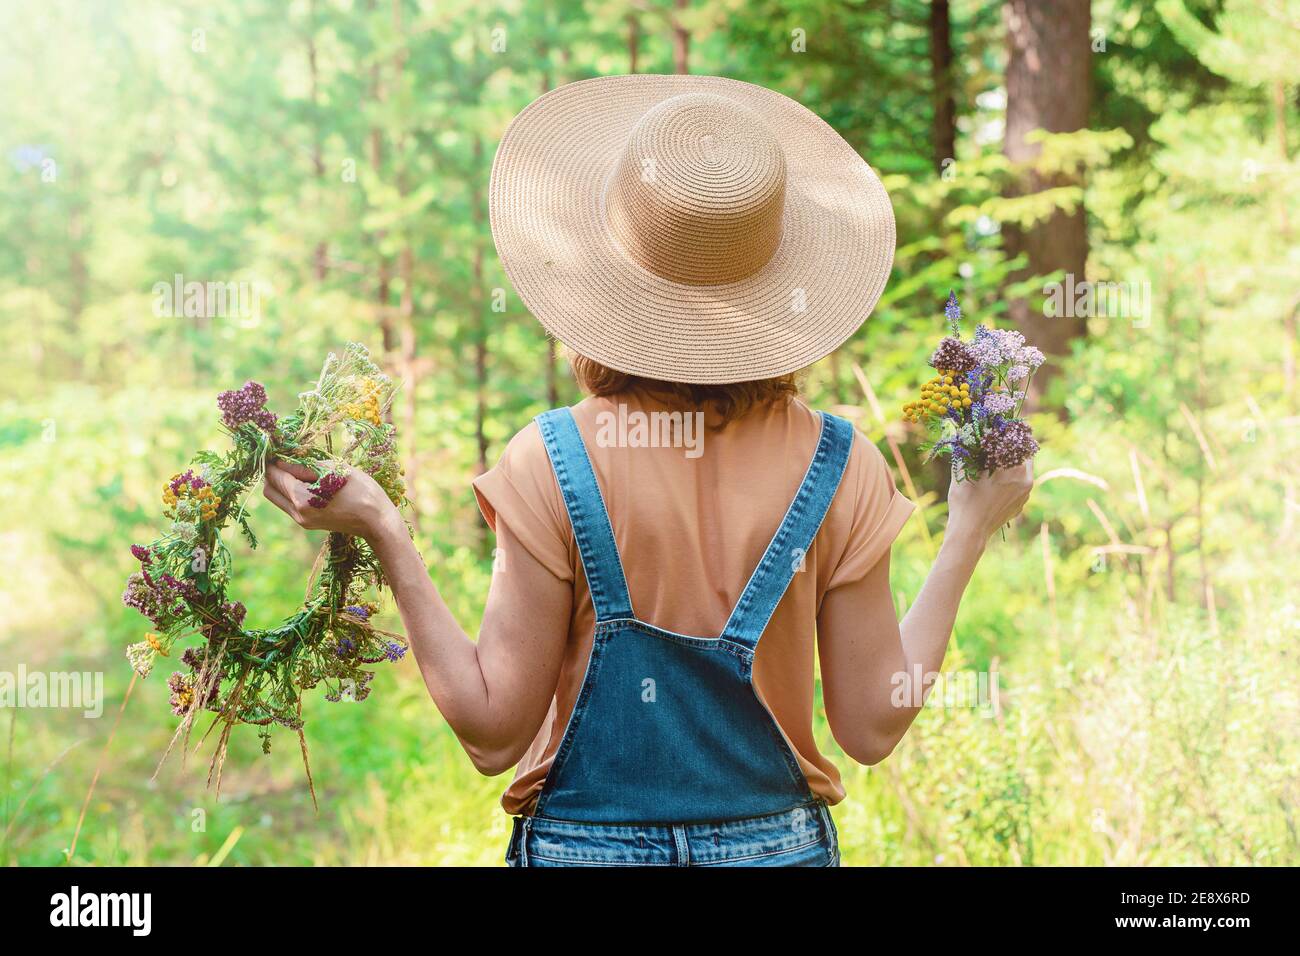 La mujer en un sombrero de paja y un mono vaquero sostiene una corona de  flores del bosque. Vista posterior. Fondo del bosque Fotografía de stock -  Alamy